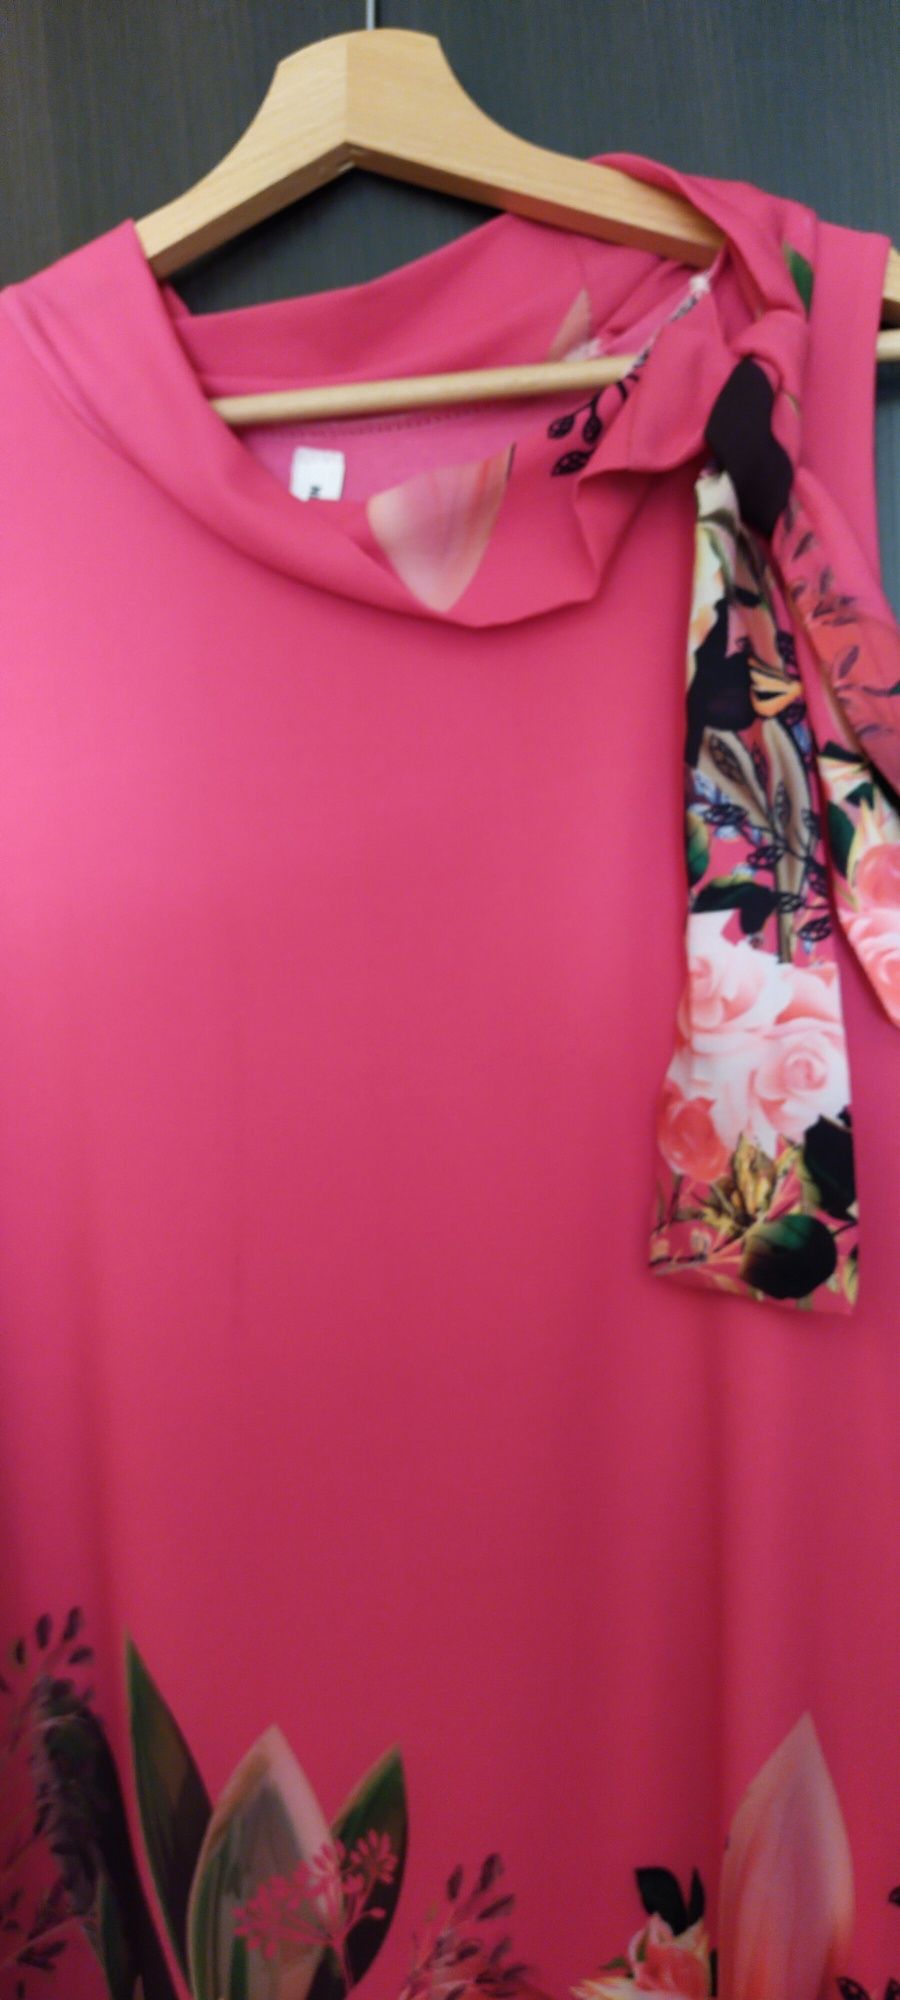 Zwiewna sukienka różowa print kwiatowy 38-42